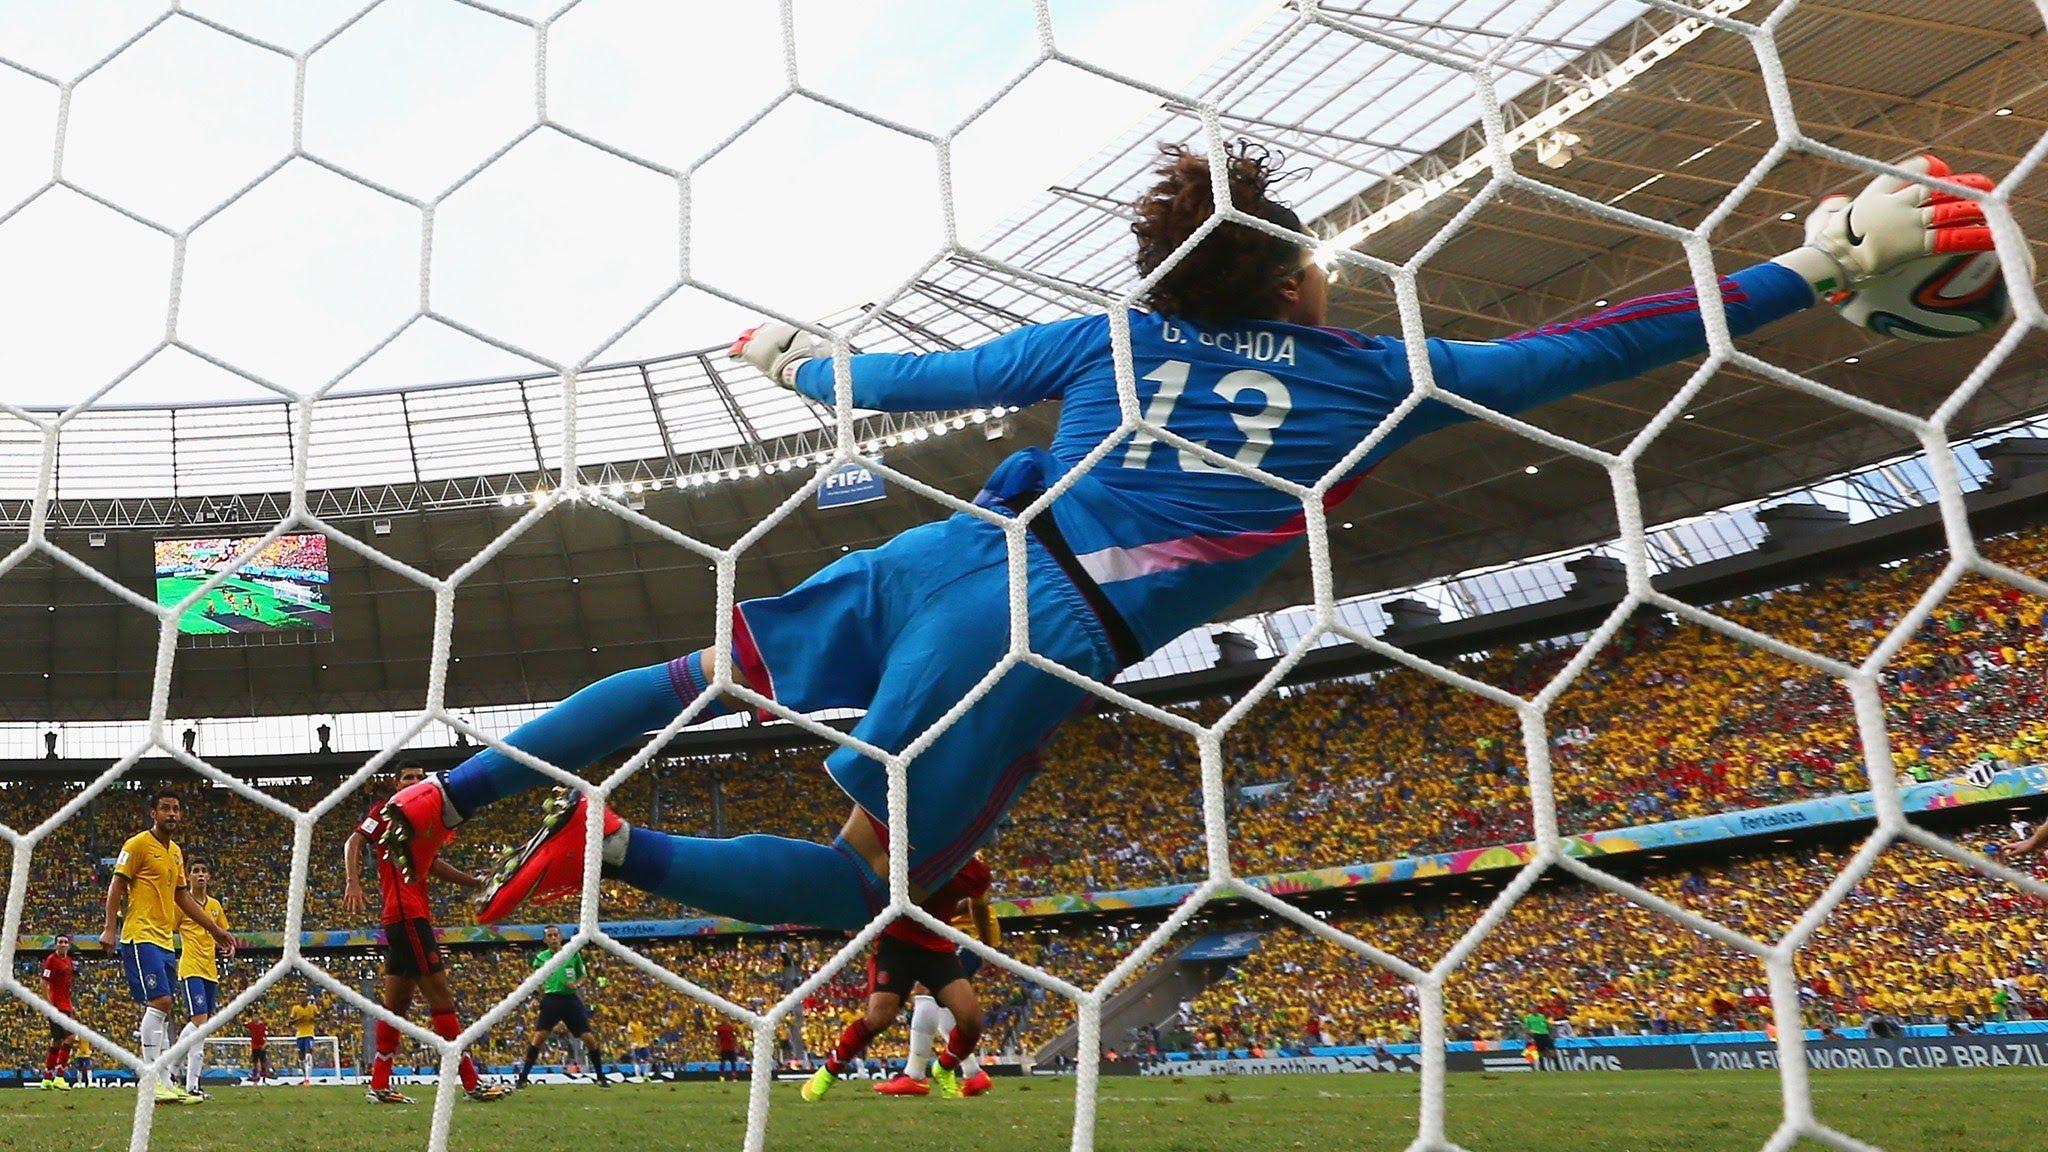 14张图回顾2014巴西世界杯精彩瞬间 那些场景让你印象最深刻？